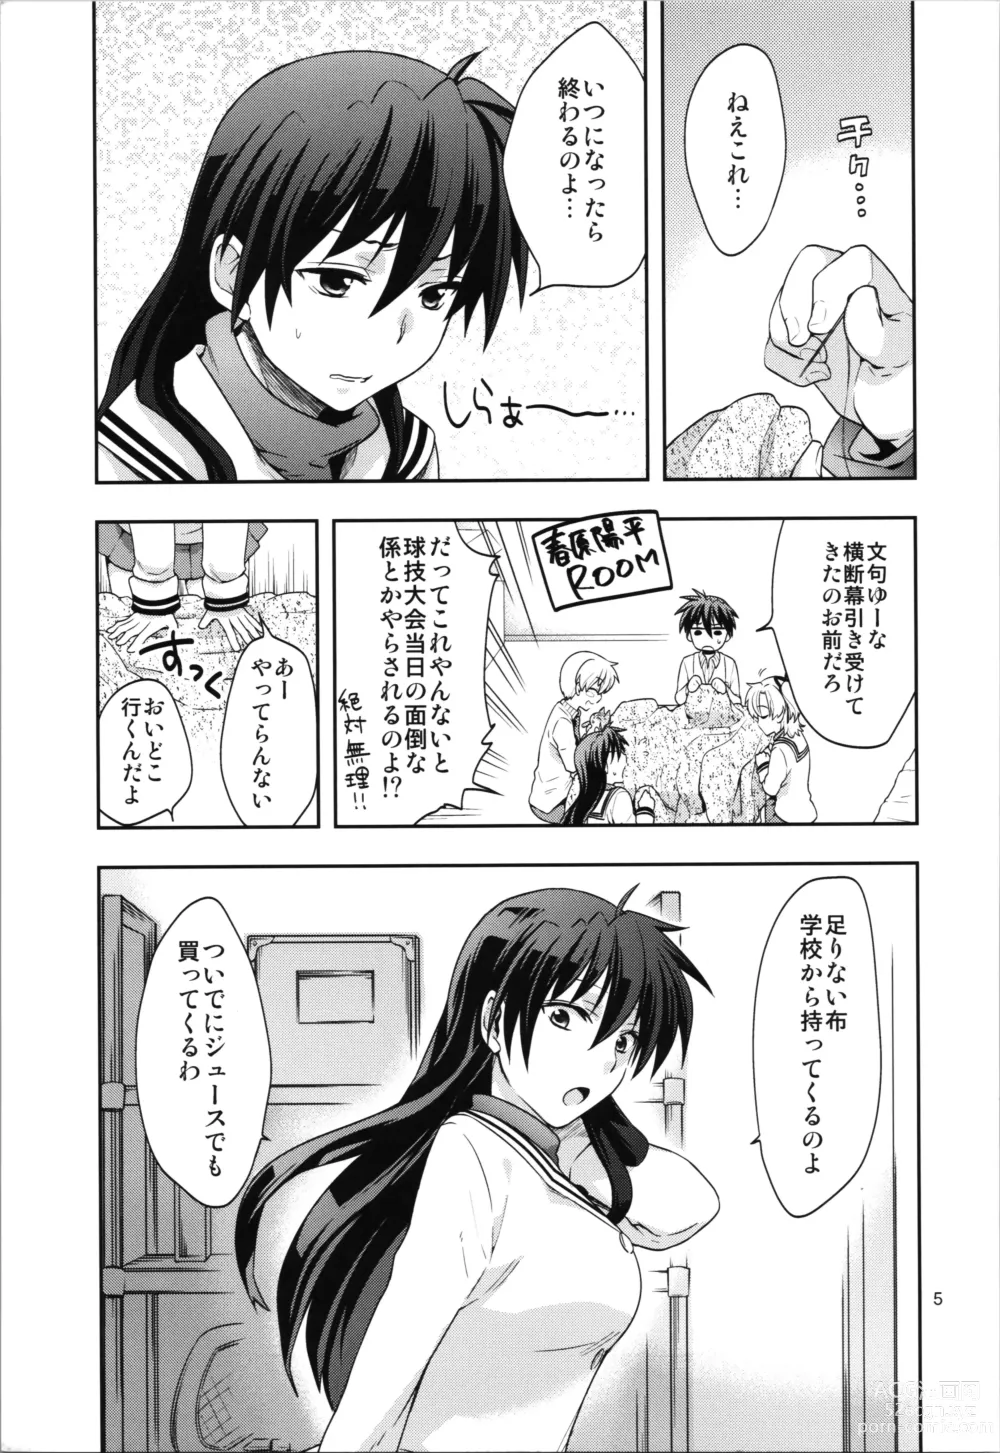 Page 5 of doujinshi Ura Haruhara Mania